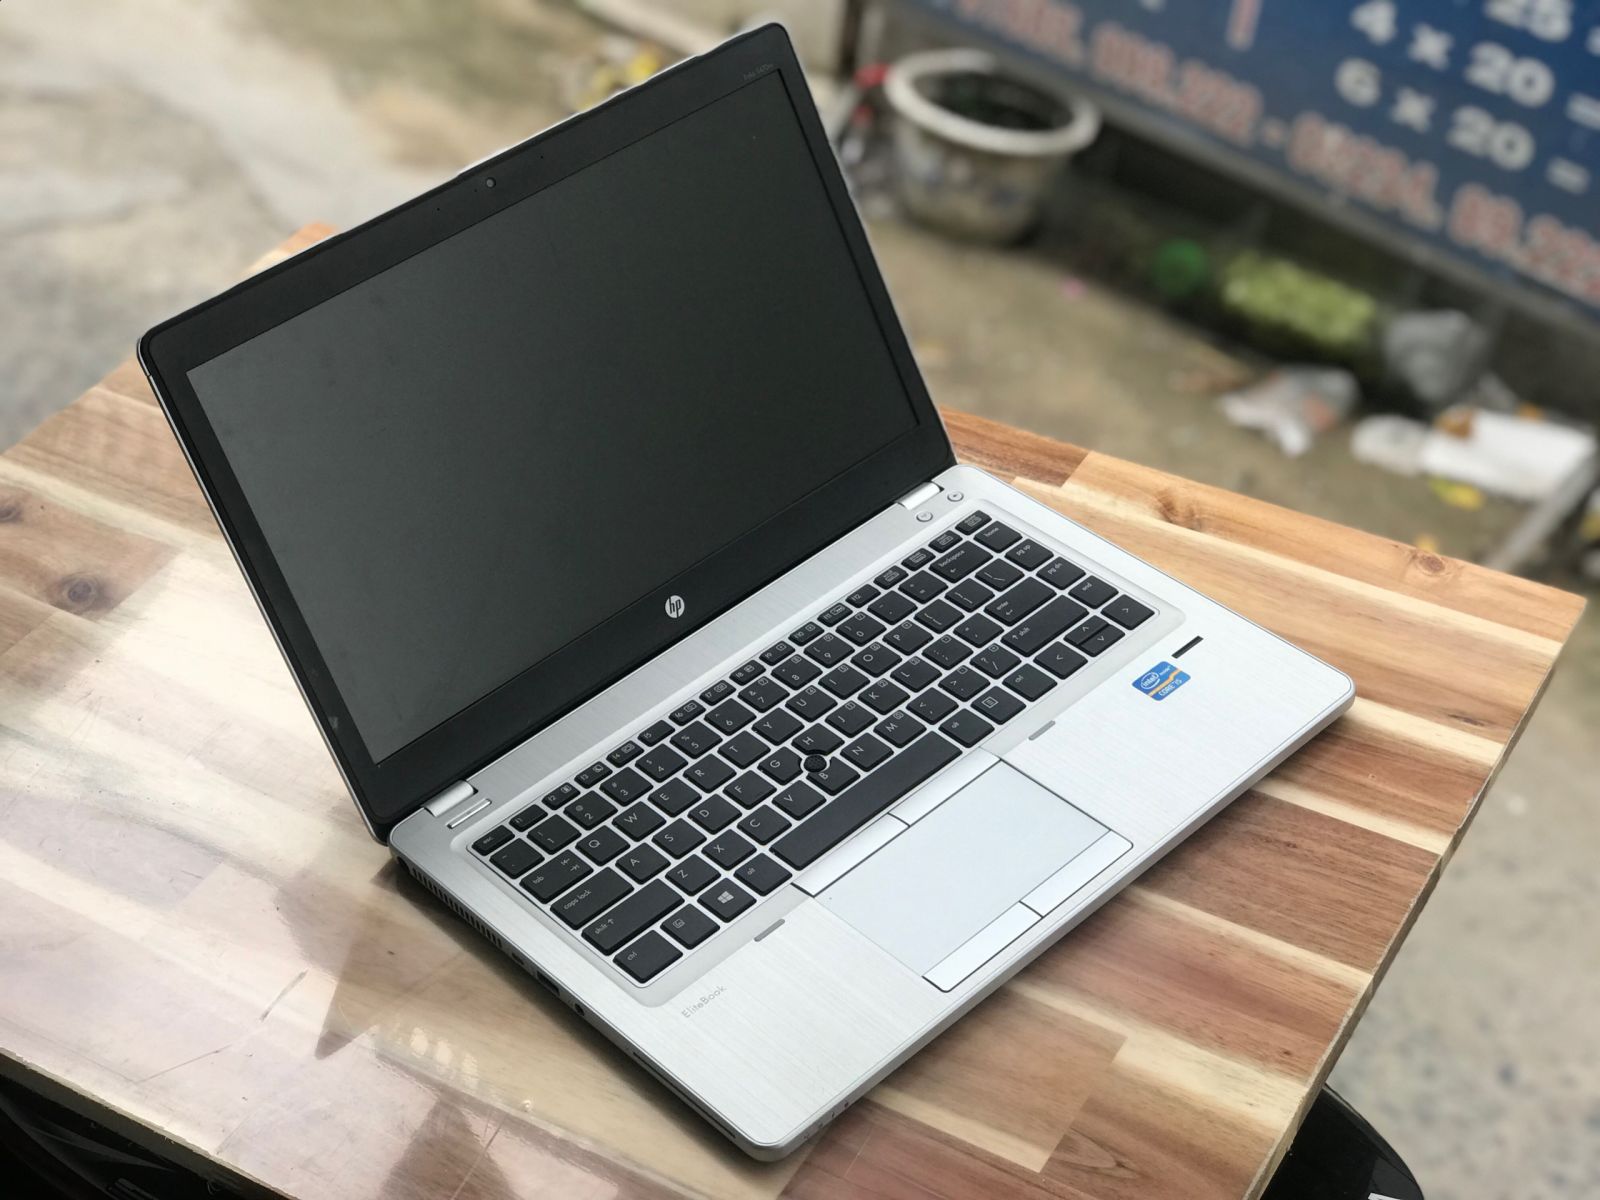 Hình ảnh HP Folio 9480M Core i7 4600U giá rẻ của Laptop Minh Mẫn